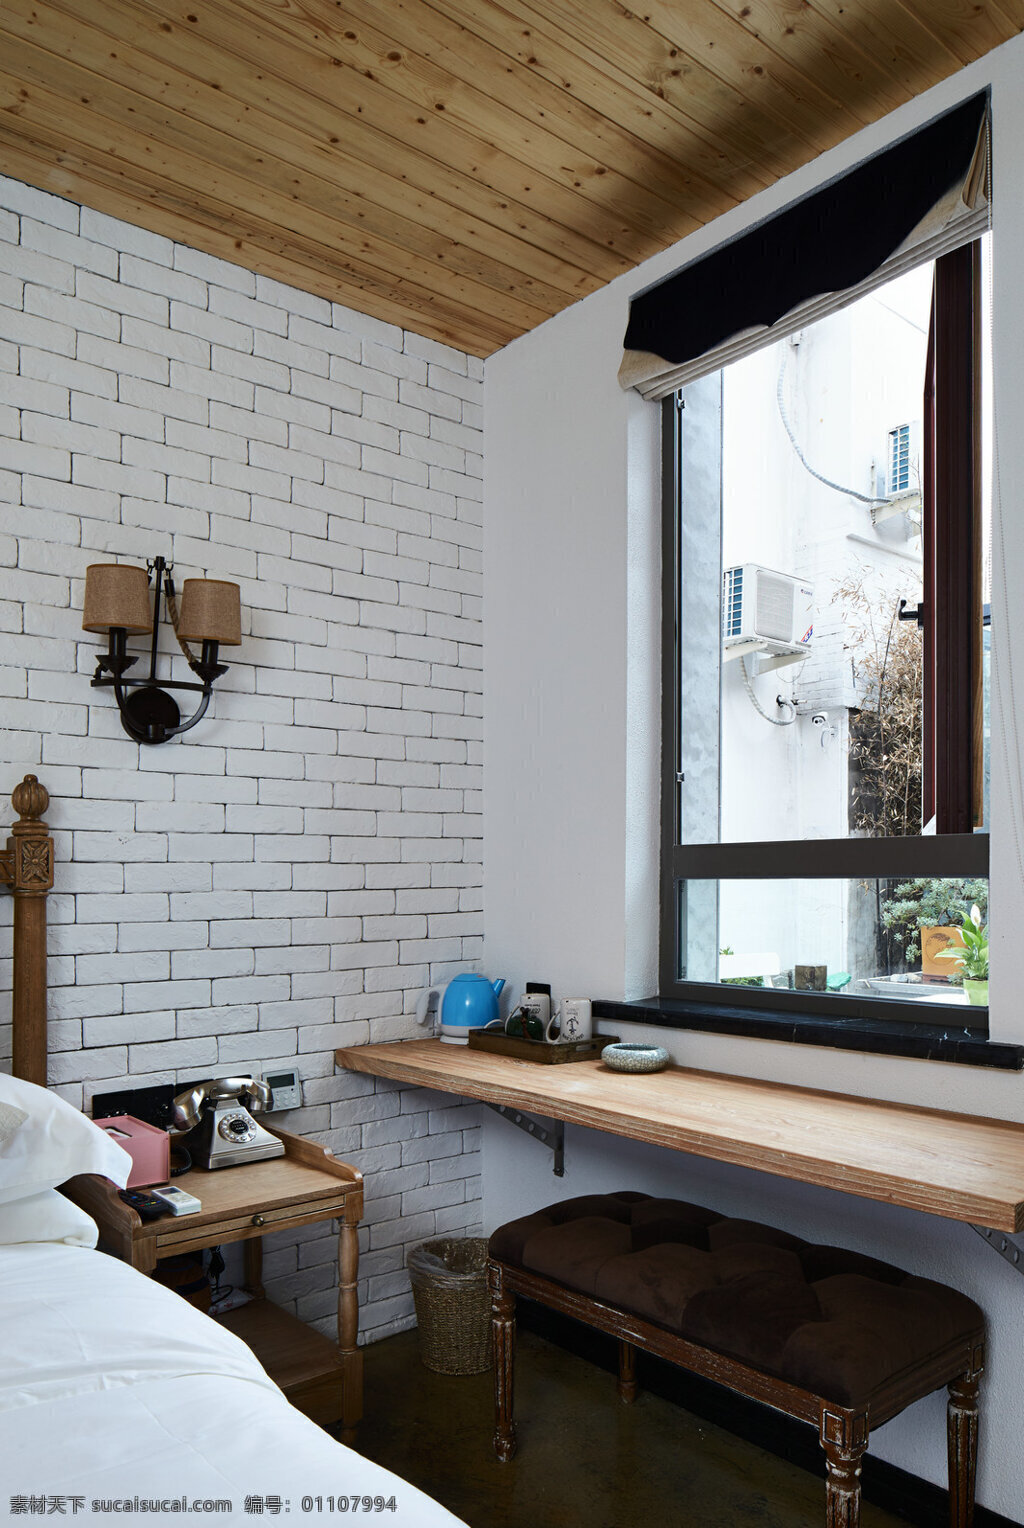 现代 时尚 卧室 褐色 壁灯 室内装修 效果图 白色背景墙 木地板 木制柜子 卧室装修